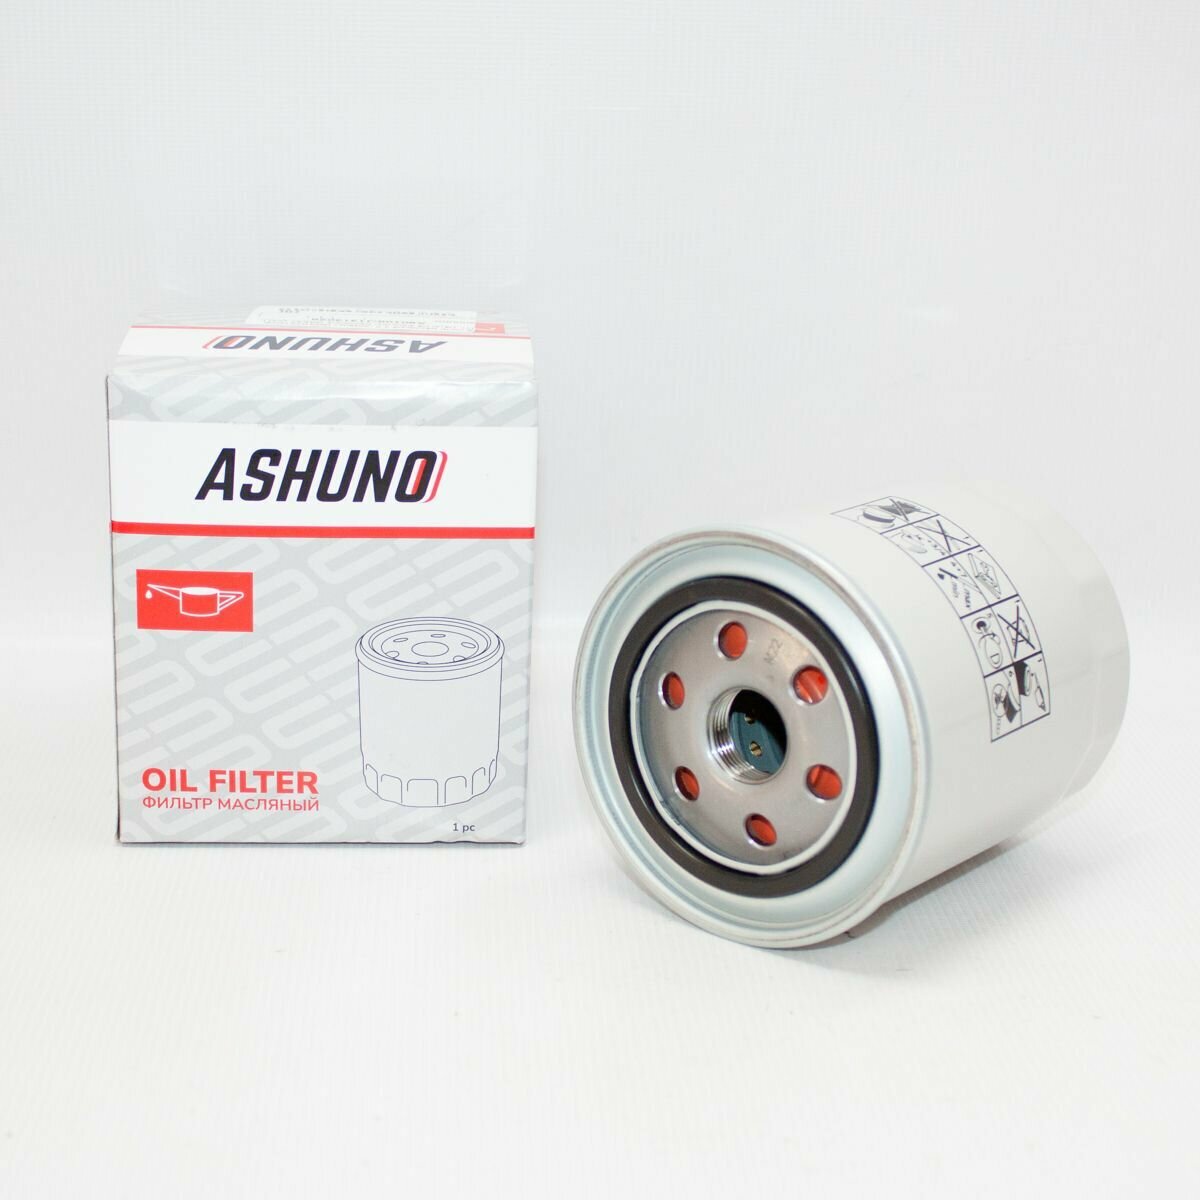 Фильтр масляный ASHUNO для 2.0 (дизель) GW4D20 Hover H5 Haval H5 / Грейт Волл Ховер Хавэйл / J1313028 A90108